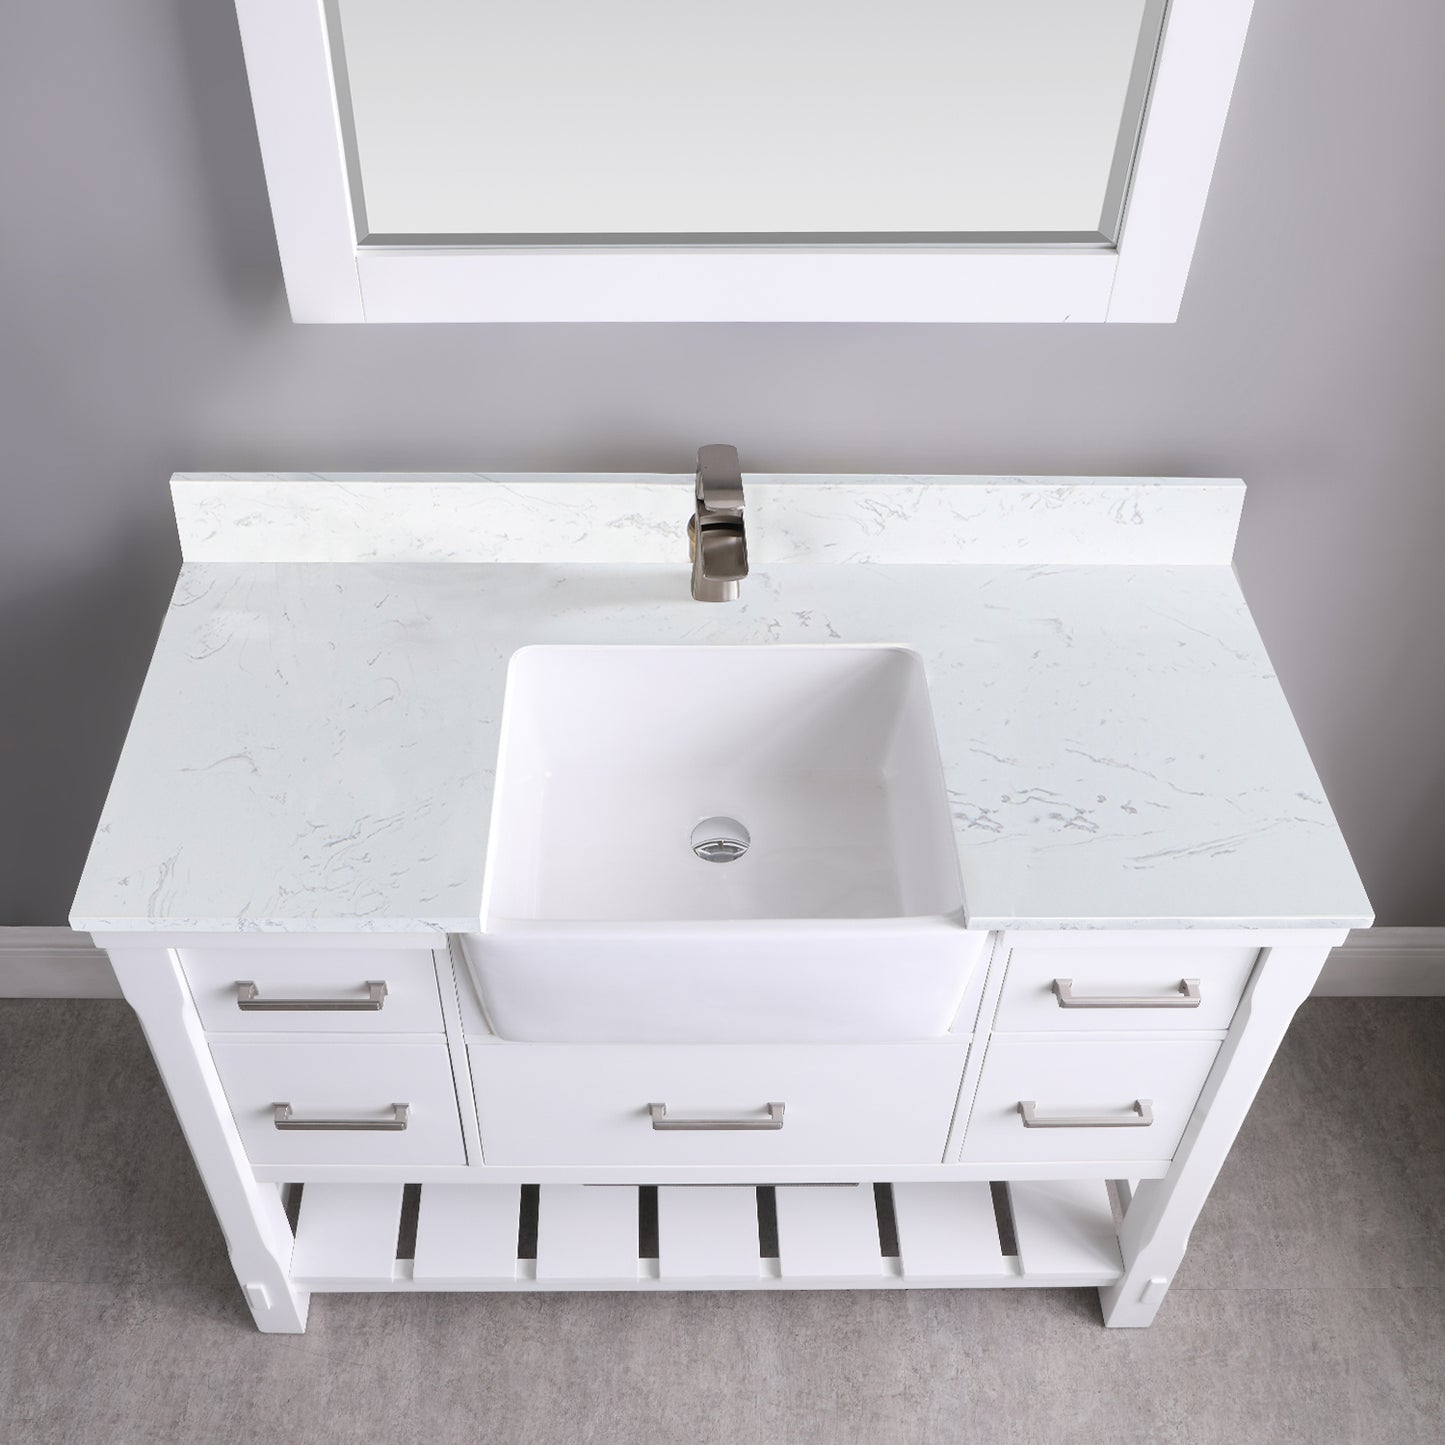 Georgia 48" Single Bathroom Vanity Set with Aosta White Composite Stone Top with White Farmhouse Basin- Altair Designs